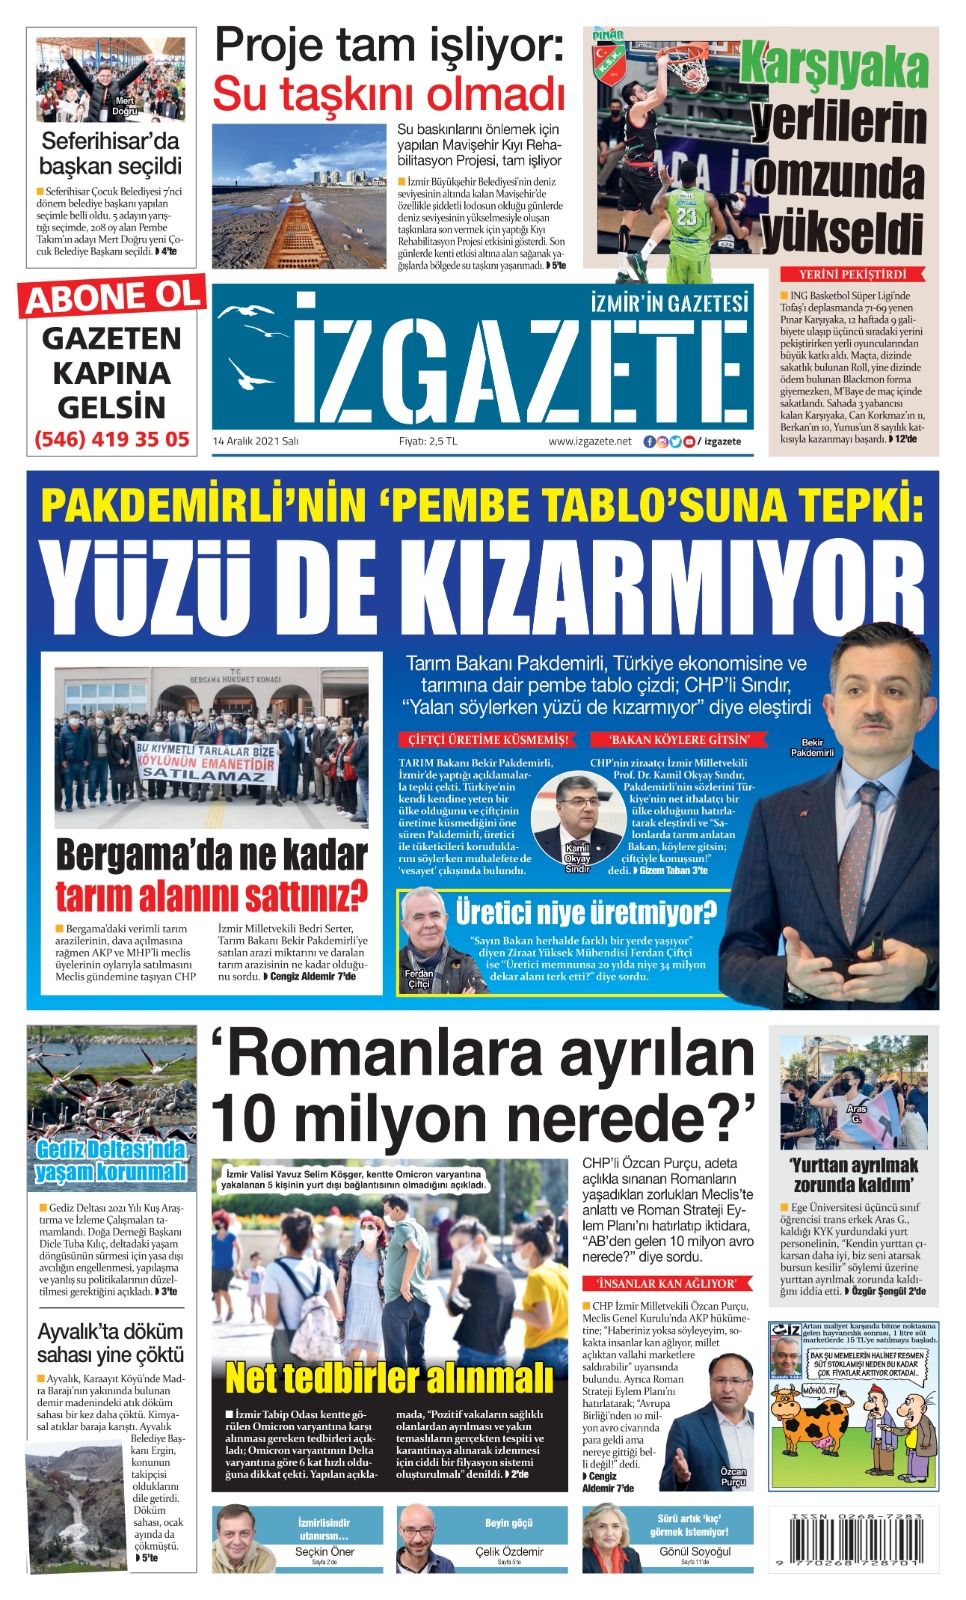 İz Gazete - İzmir'in Gazetesi - 14.12.2021 Manşeti